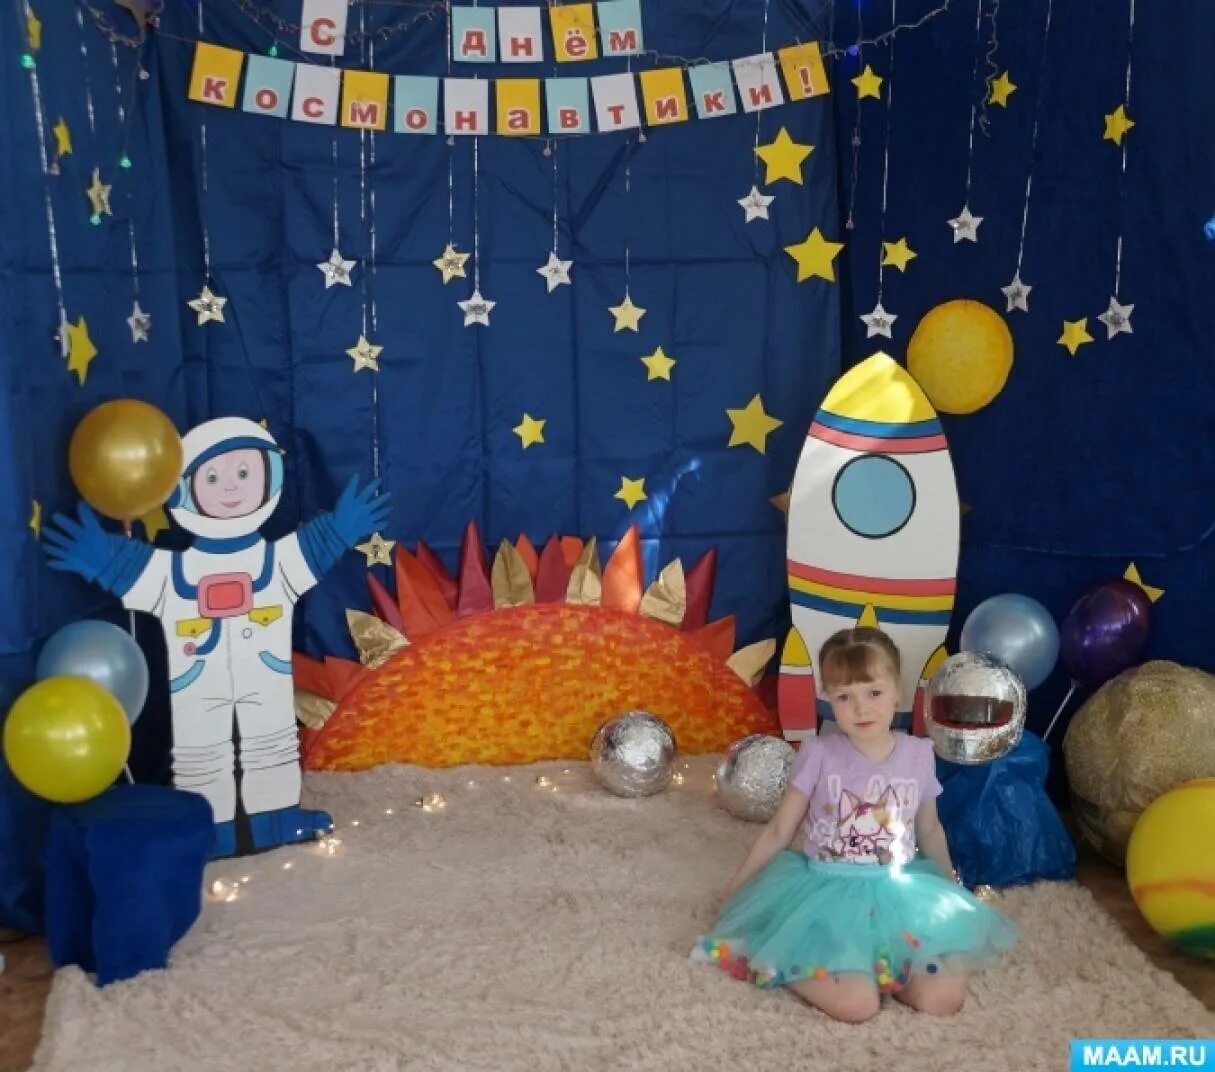 Фотозона космос в детском саду. Фото зона ко Дню космонавтики в детском саду. Оформление фотозоны космос в детском саду. Фотозона на день космонавтики в детском саду